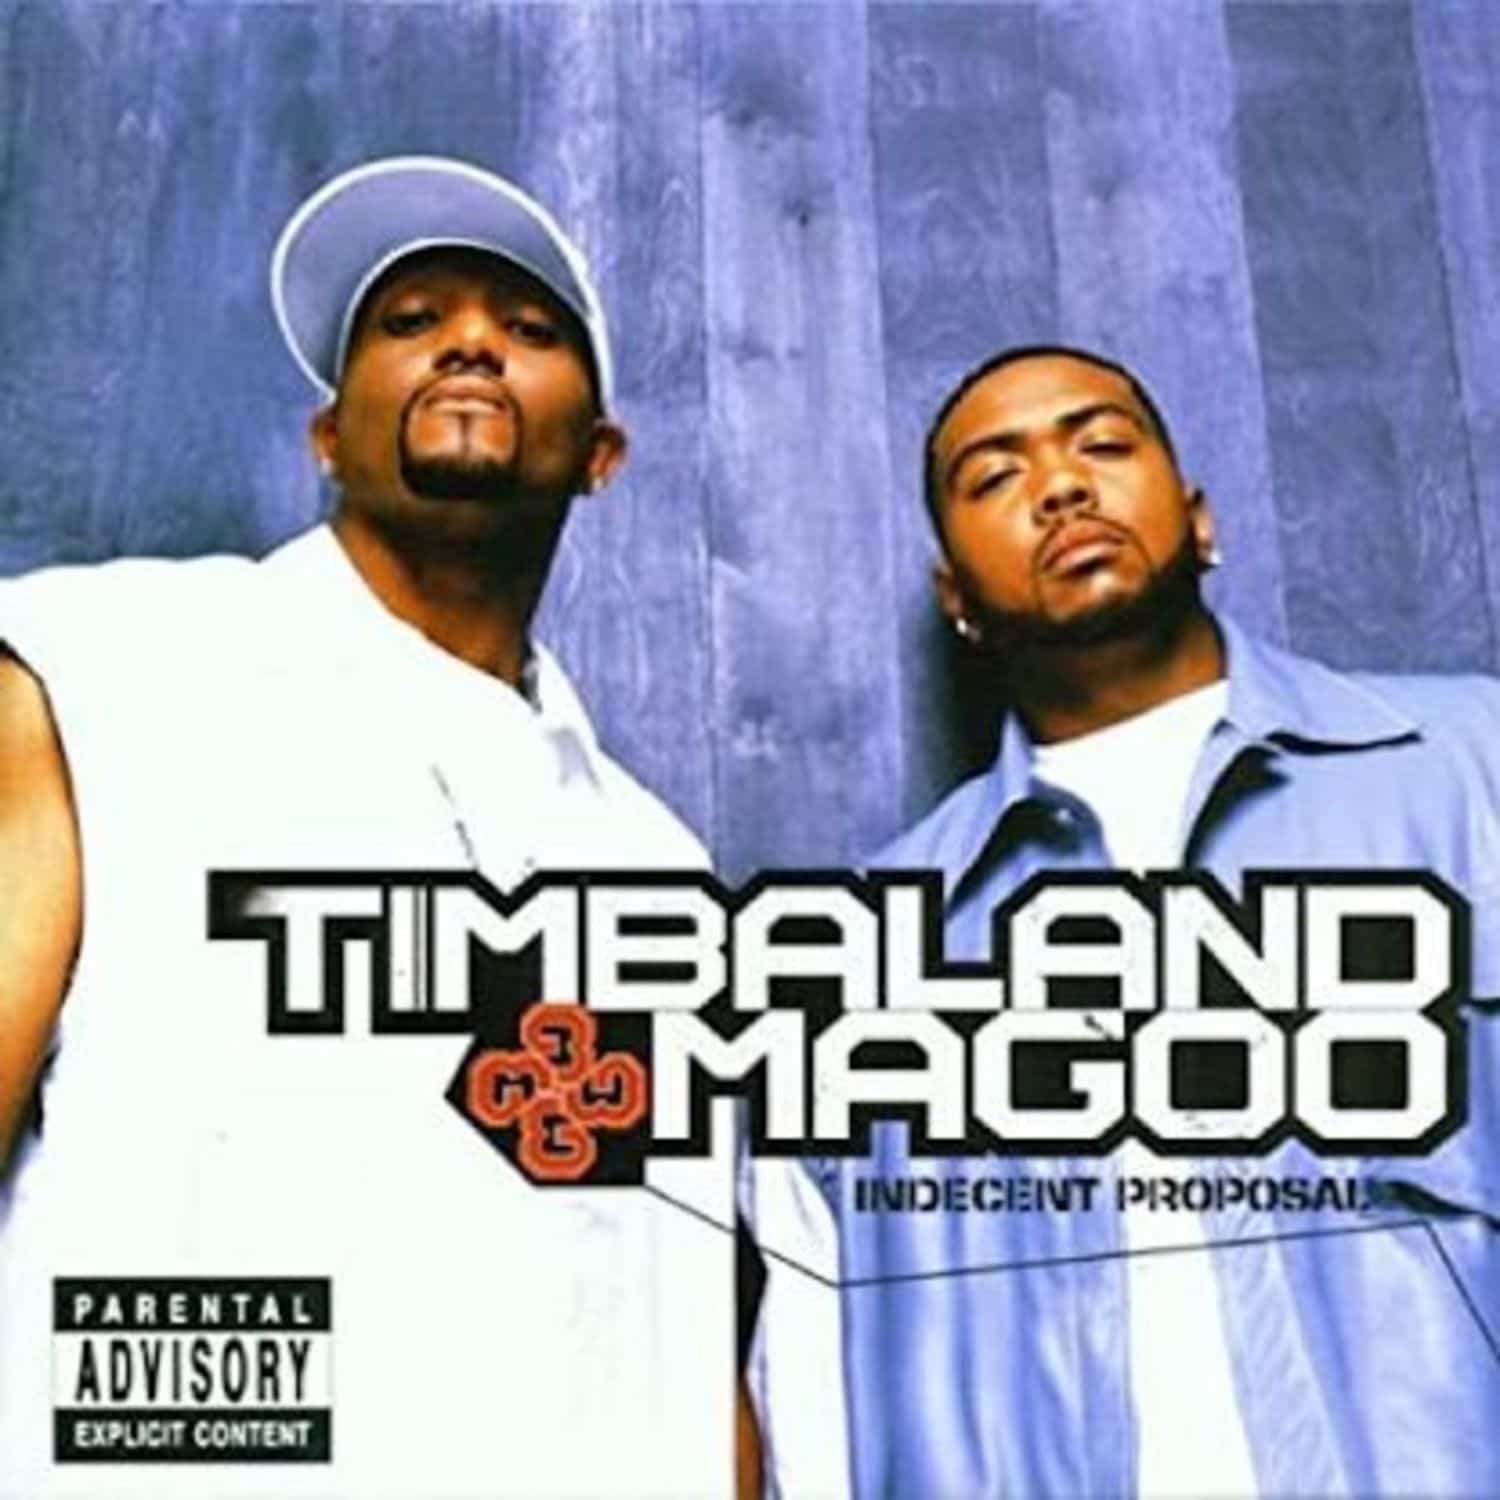 Timbaland Magoo - INDECENT PROPOSAL 